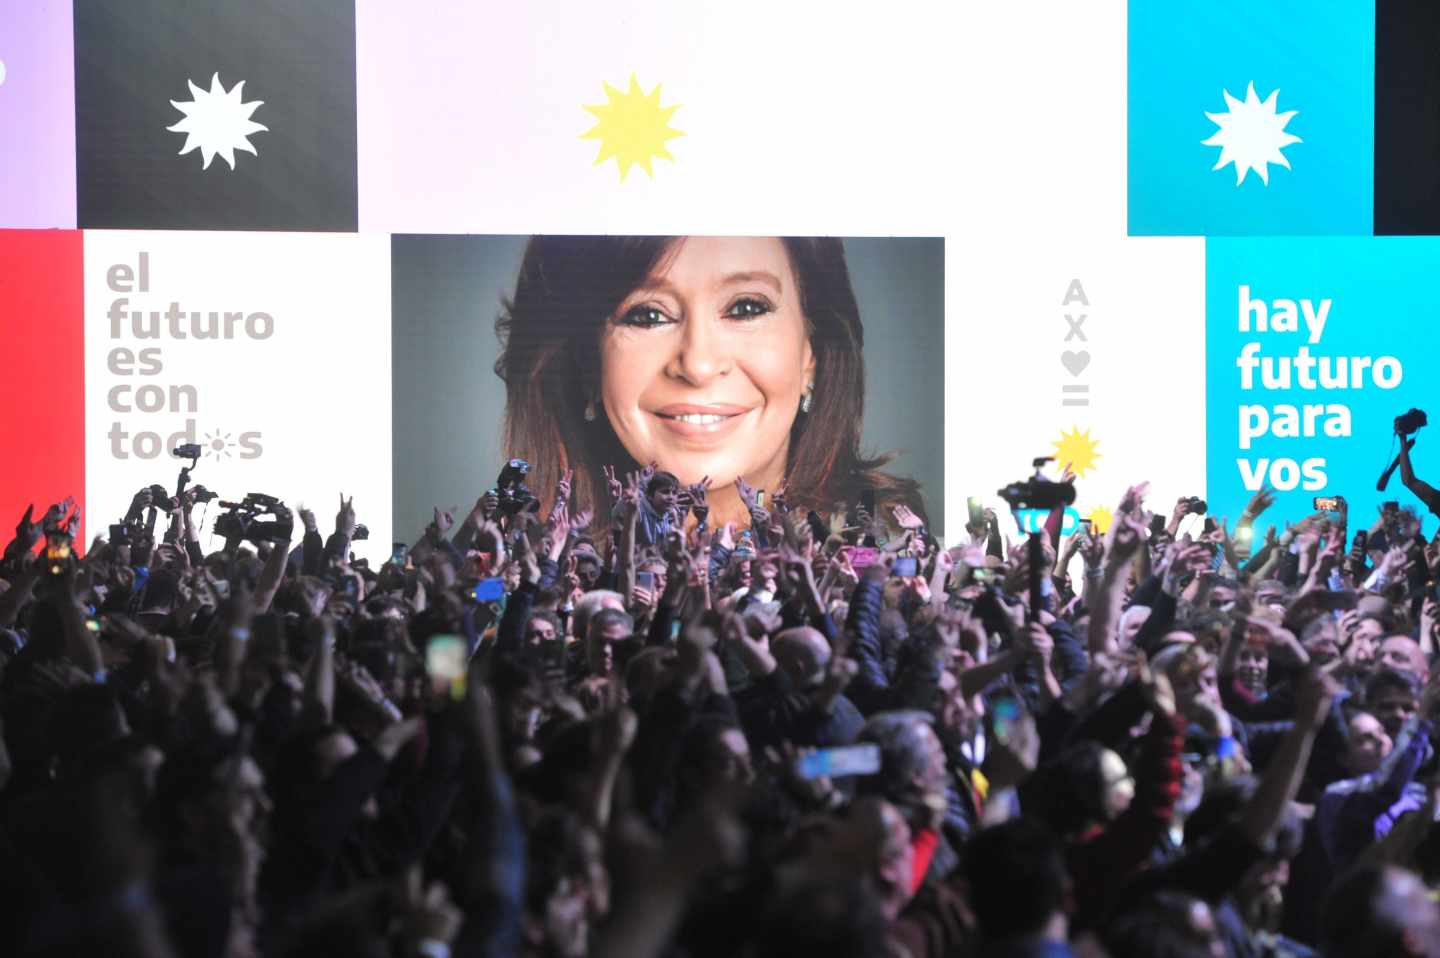 Seguidores peronistas aclaman Cristina Fernández de Kirchner, en imagen, al conocer la victoria en las primarias.